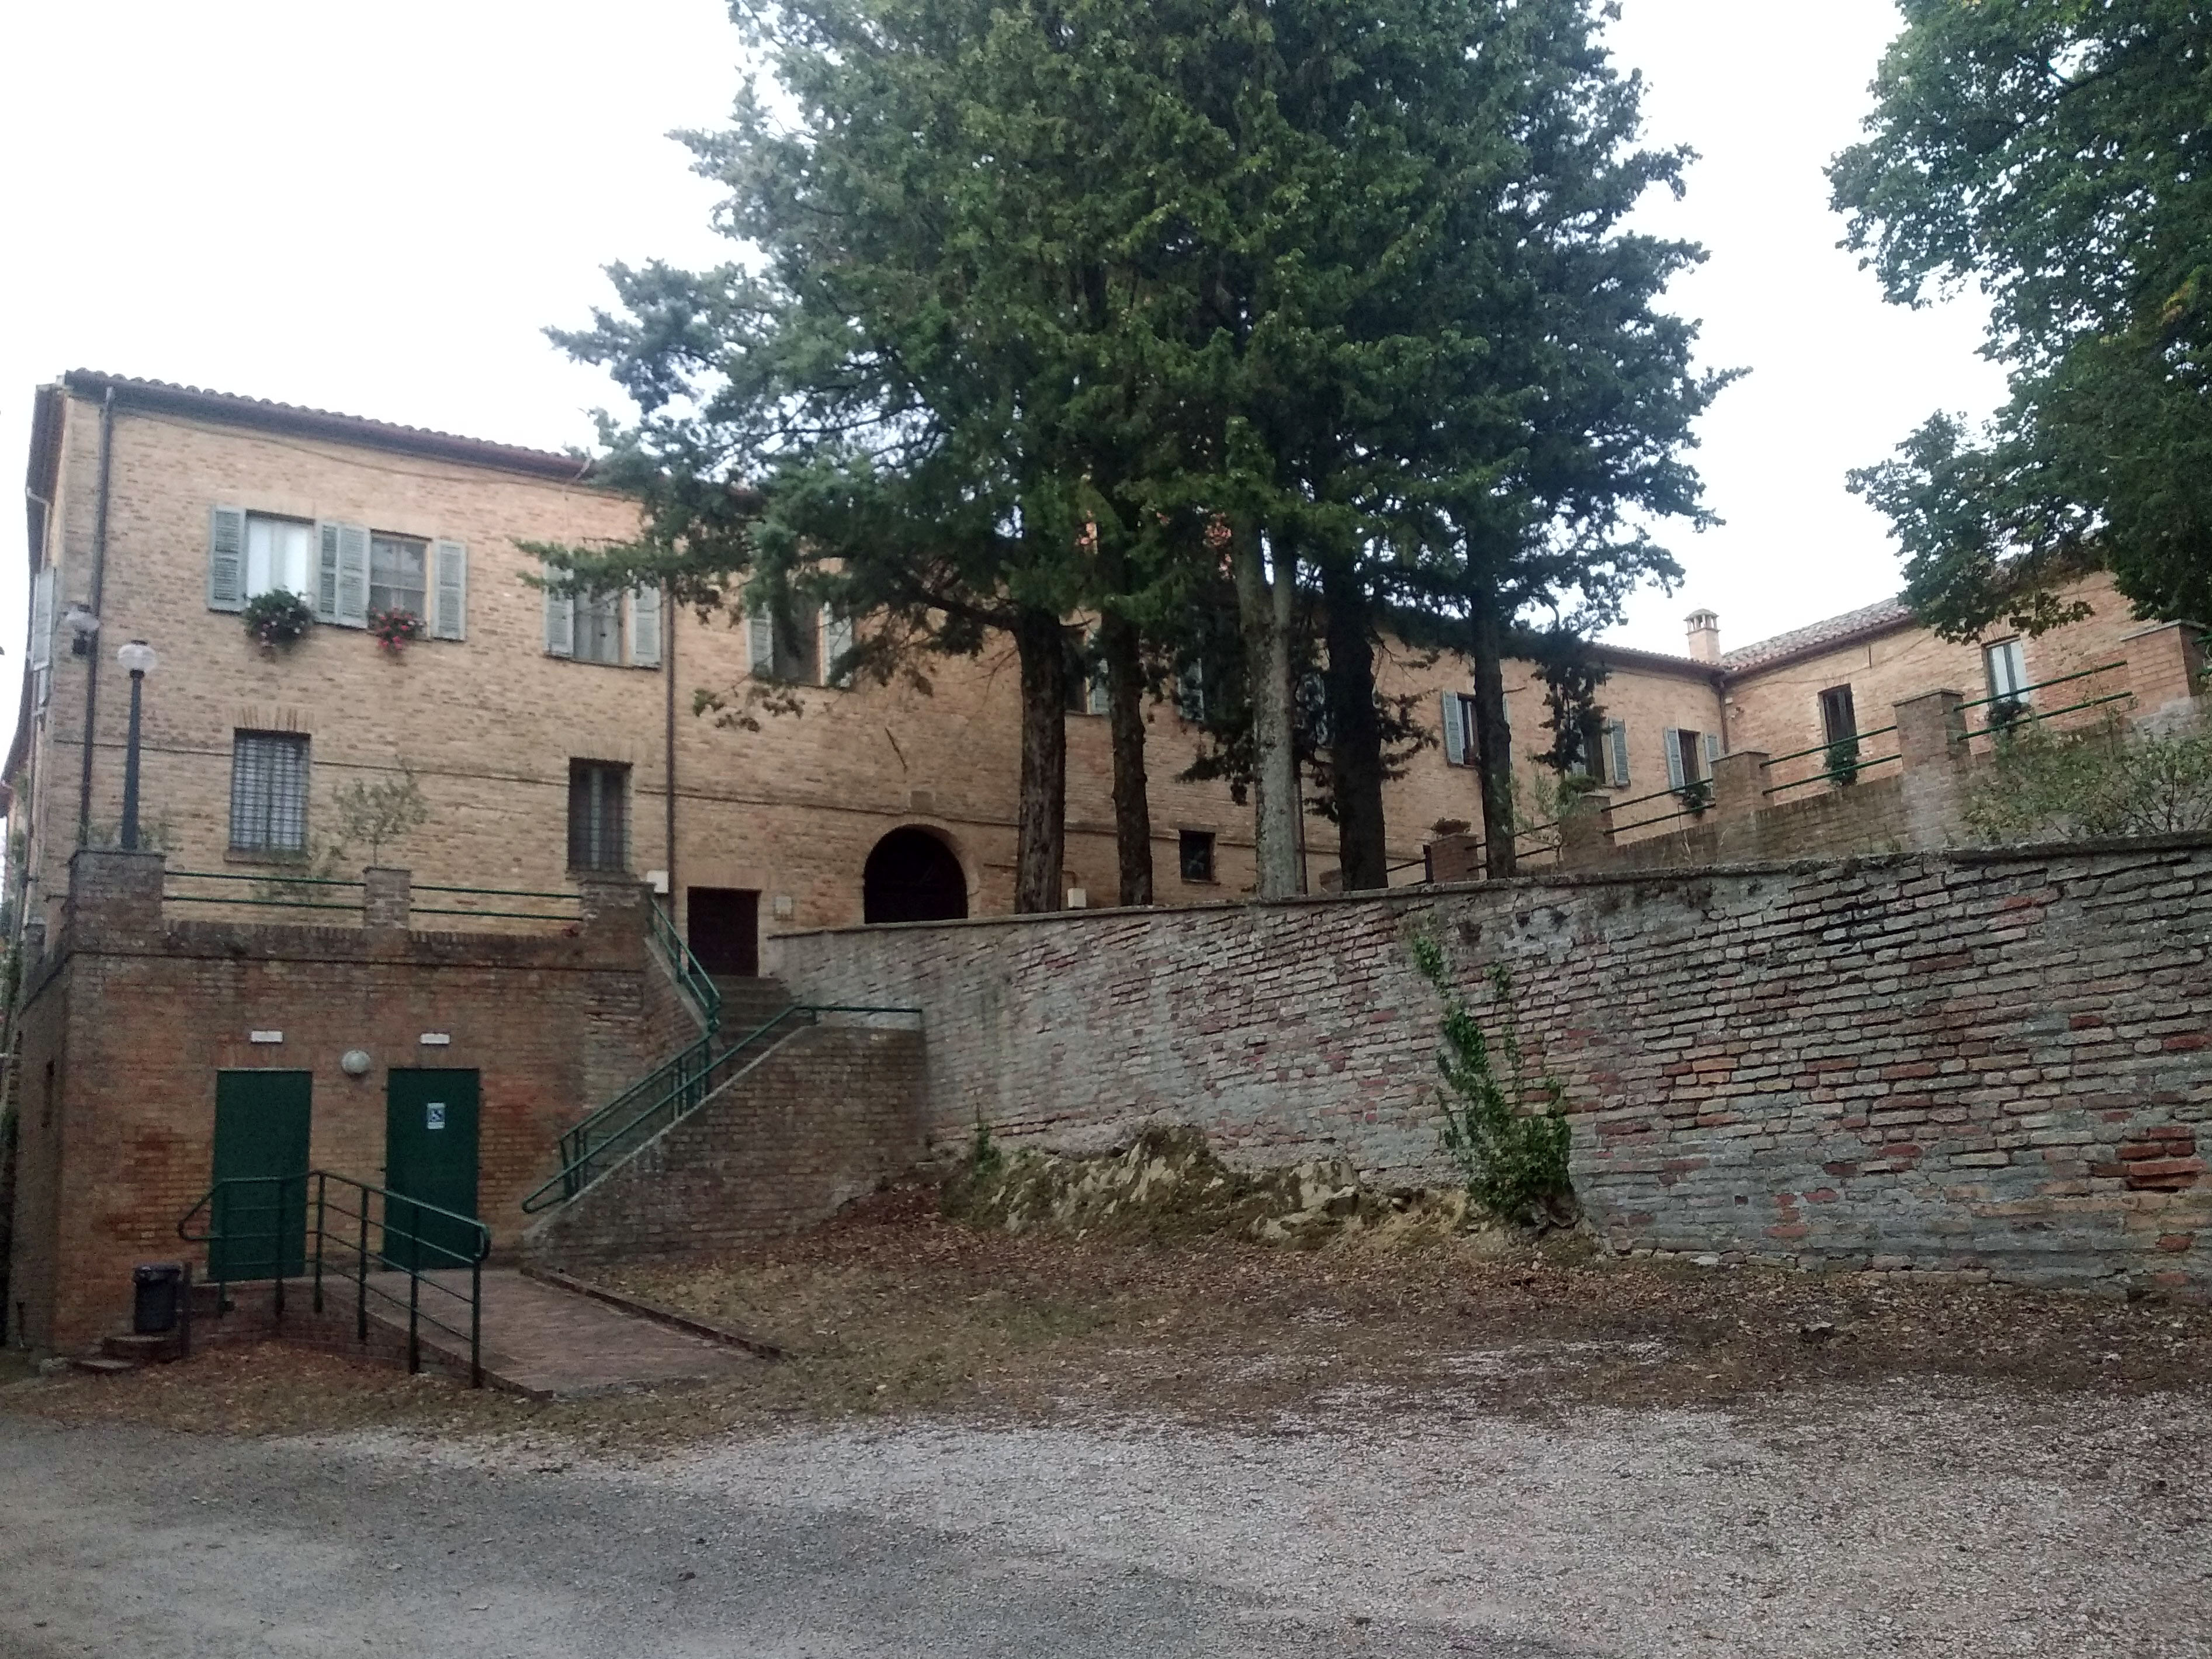 Convento del Beato Sante (convento, francescano) - Mombaroccio (PU) 